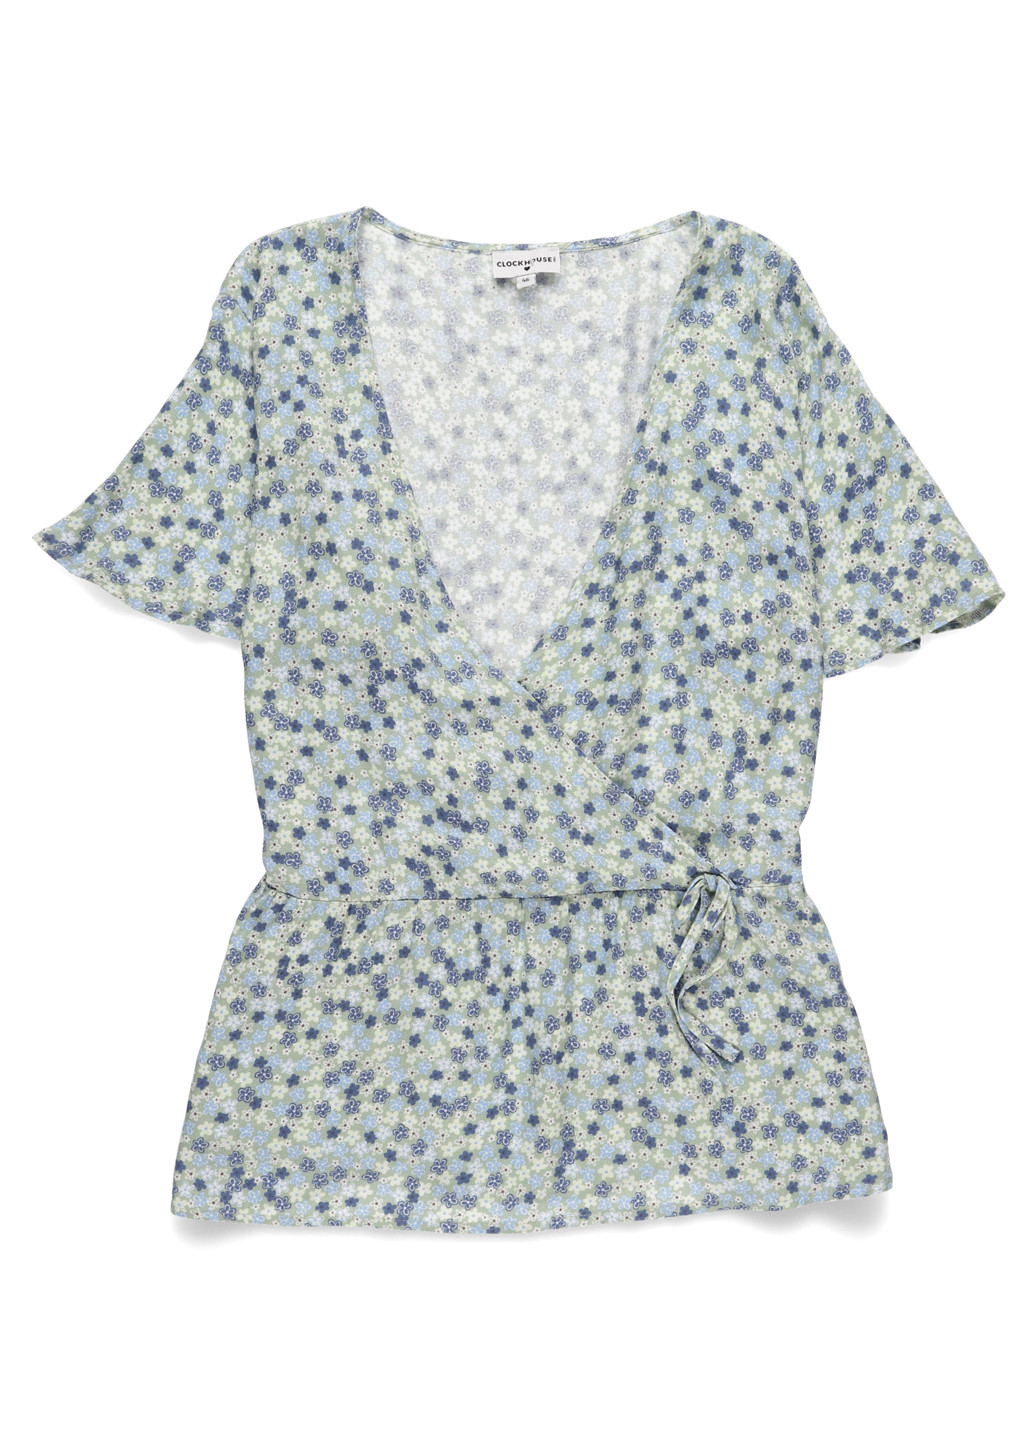 Комбинированная летняя блуза на запах C&A